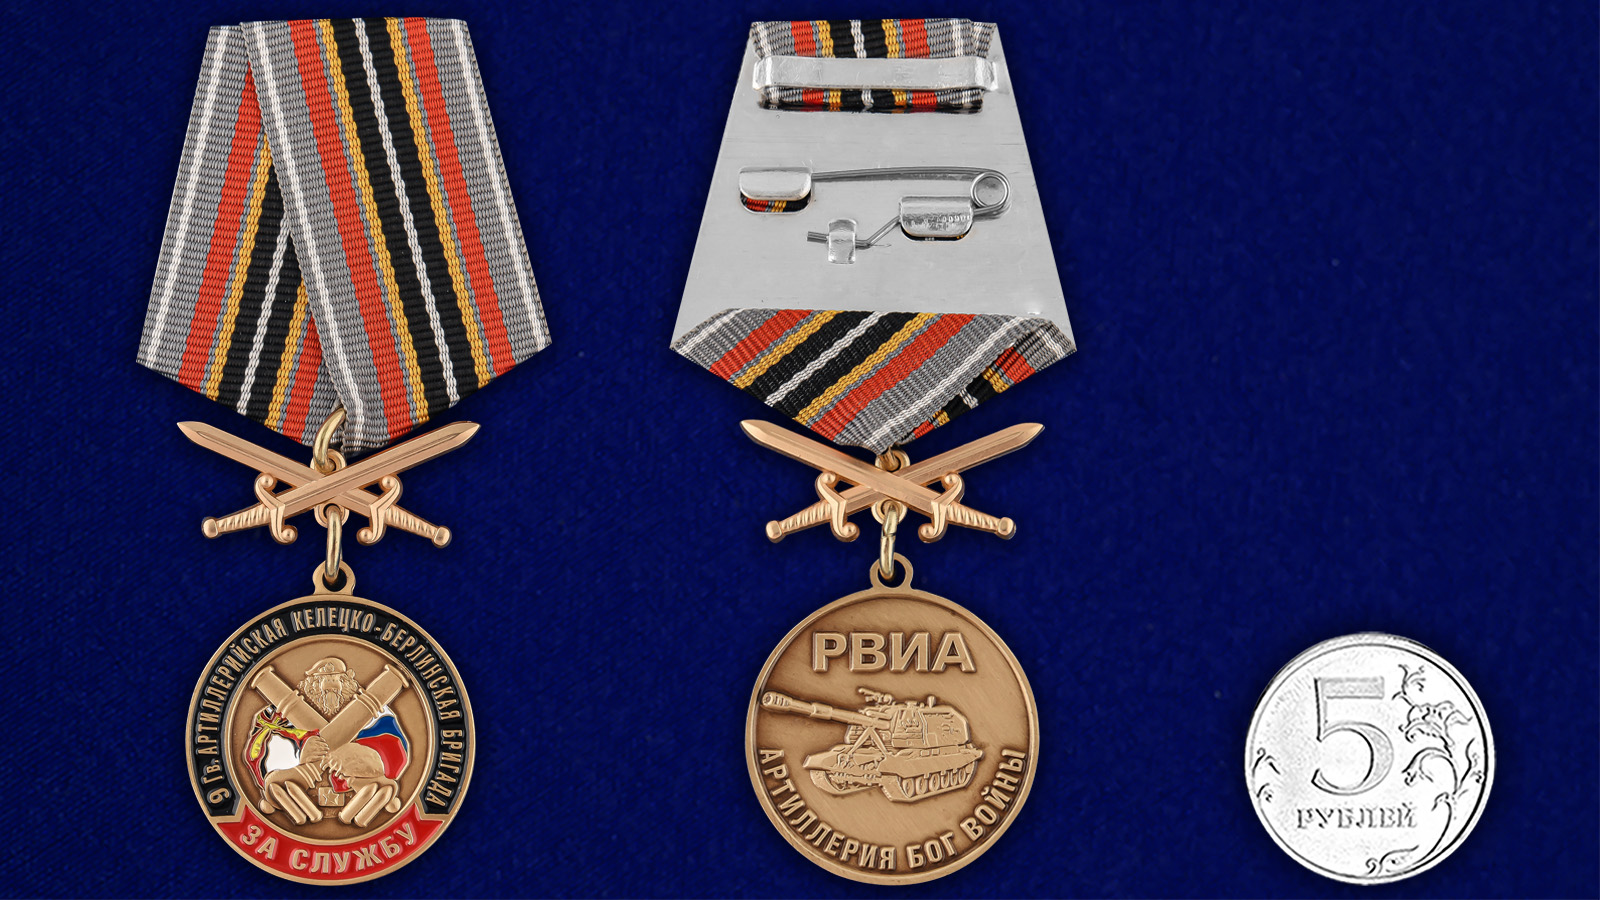 Купить медаль РВиА "За службу в 9-ой артиллерийской бригаде выгодно